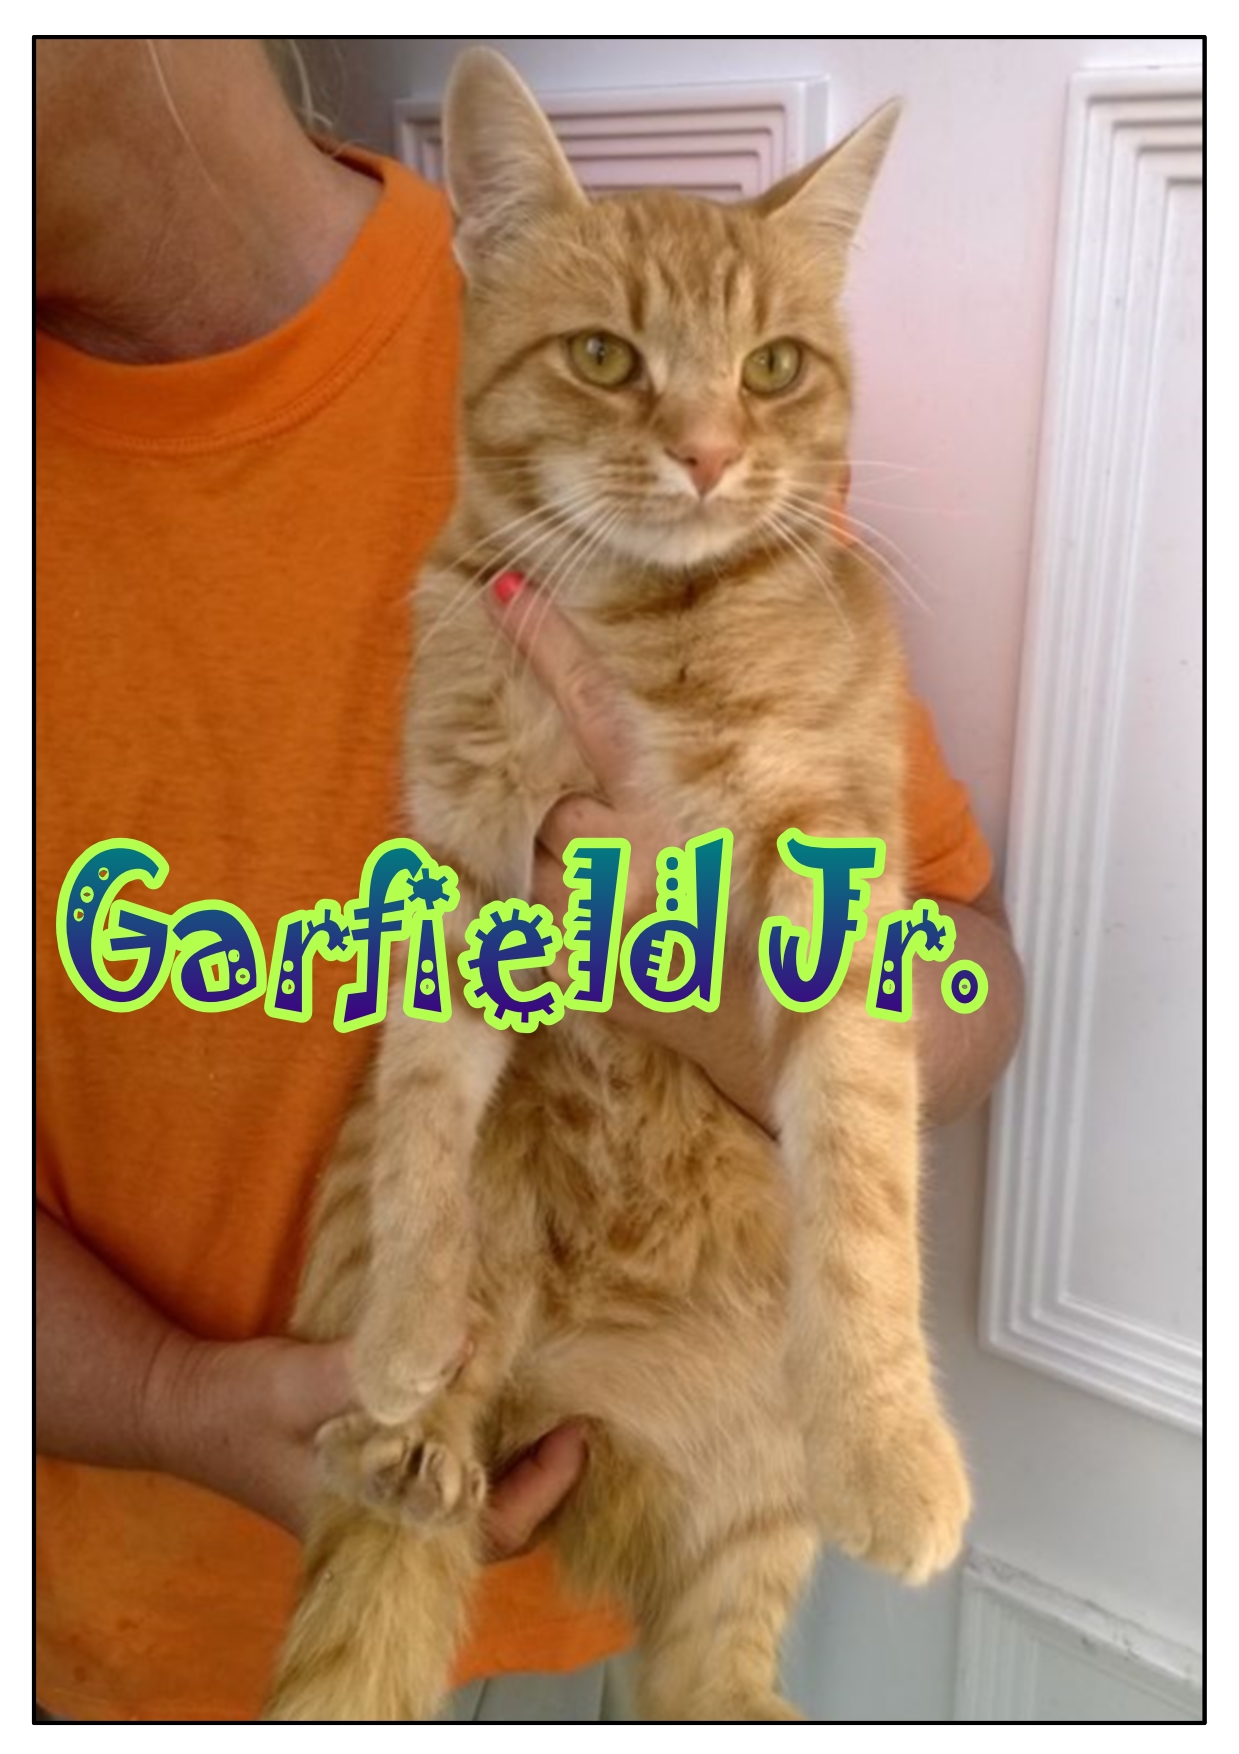 Garfield Jr_1.jpg